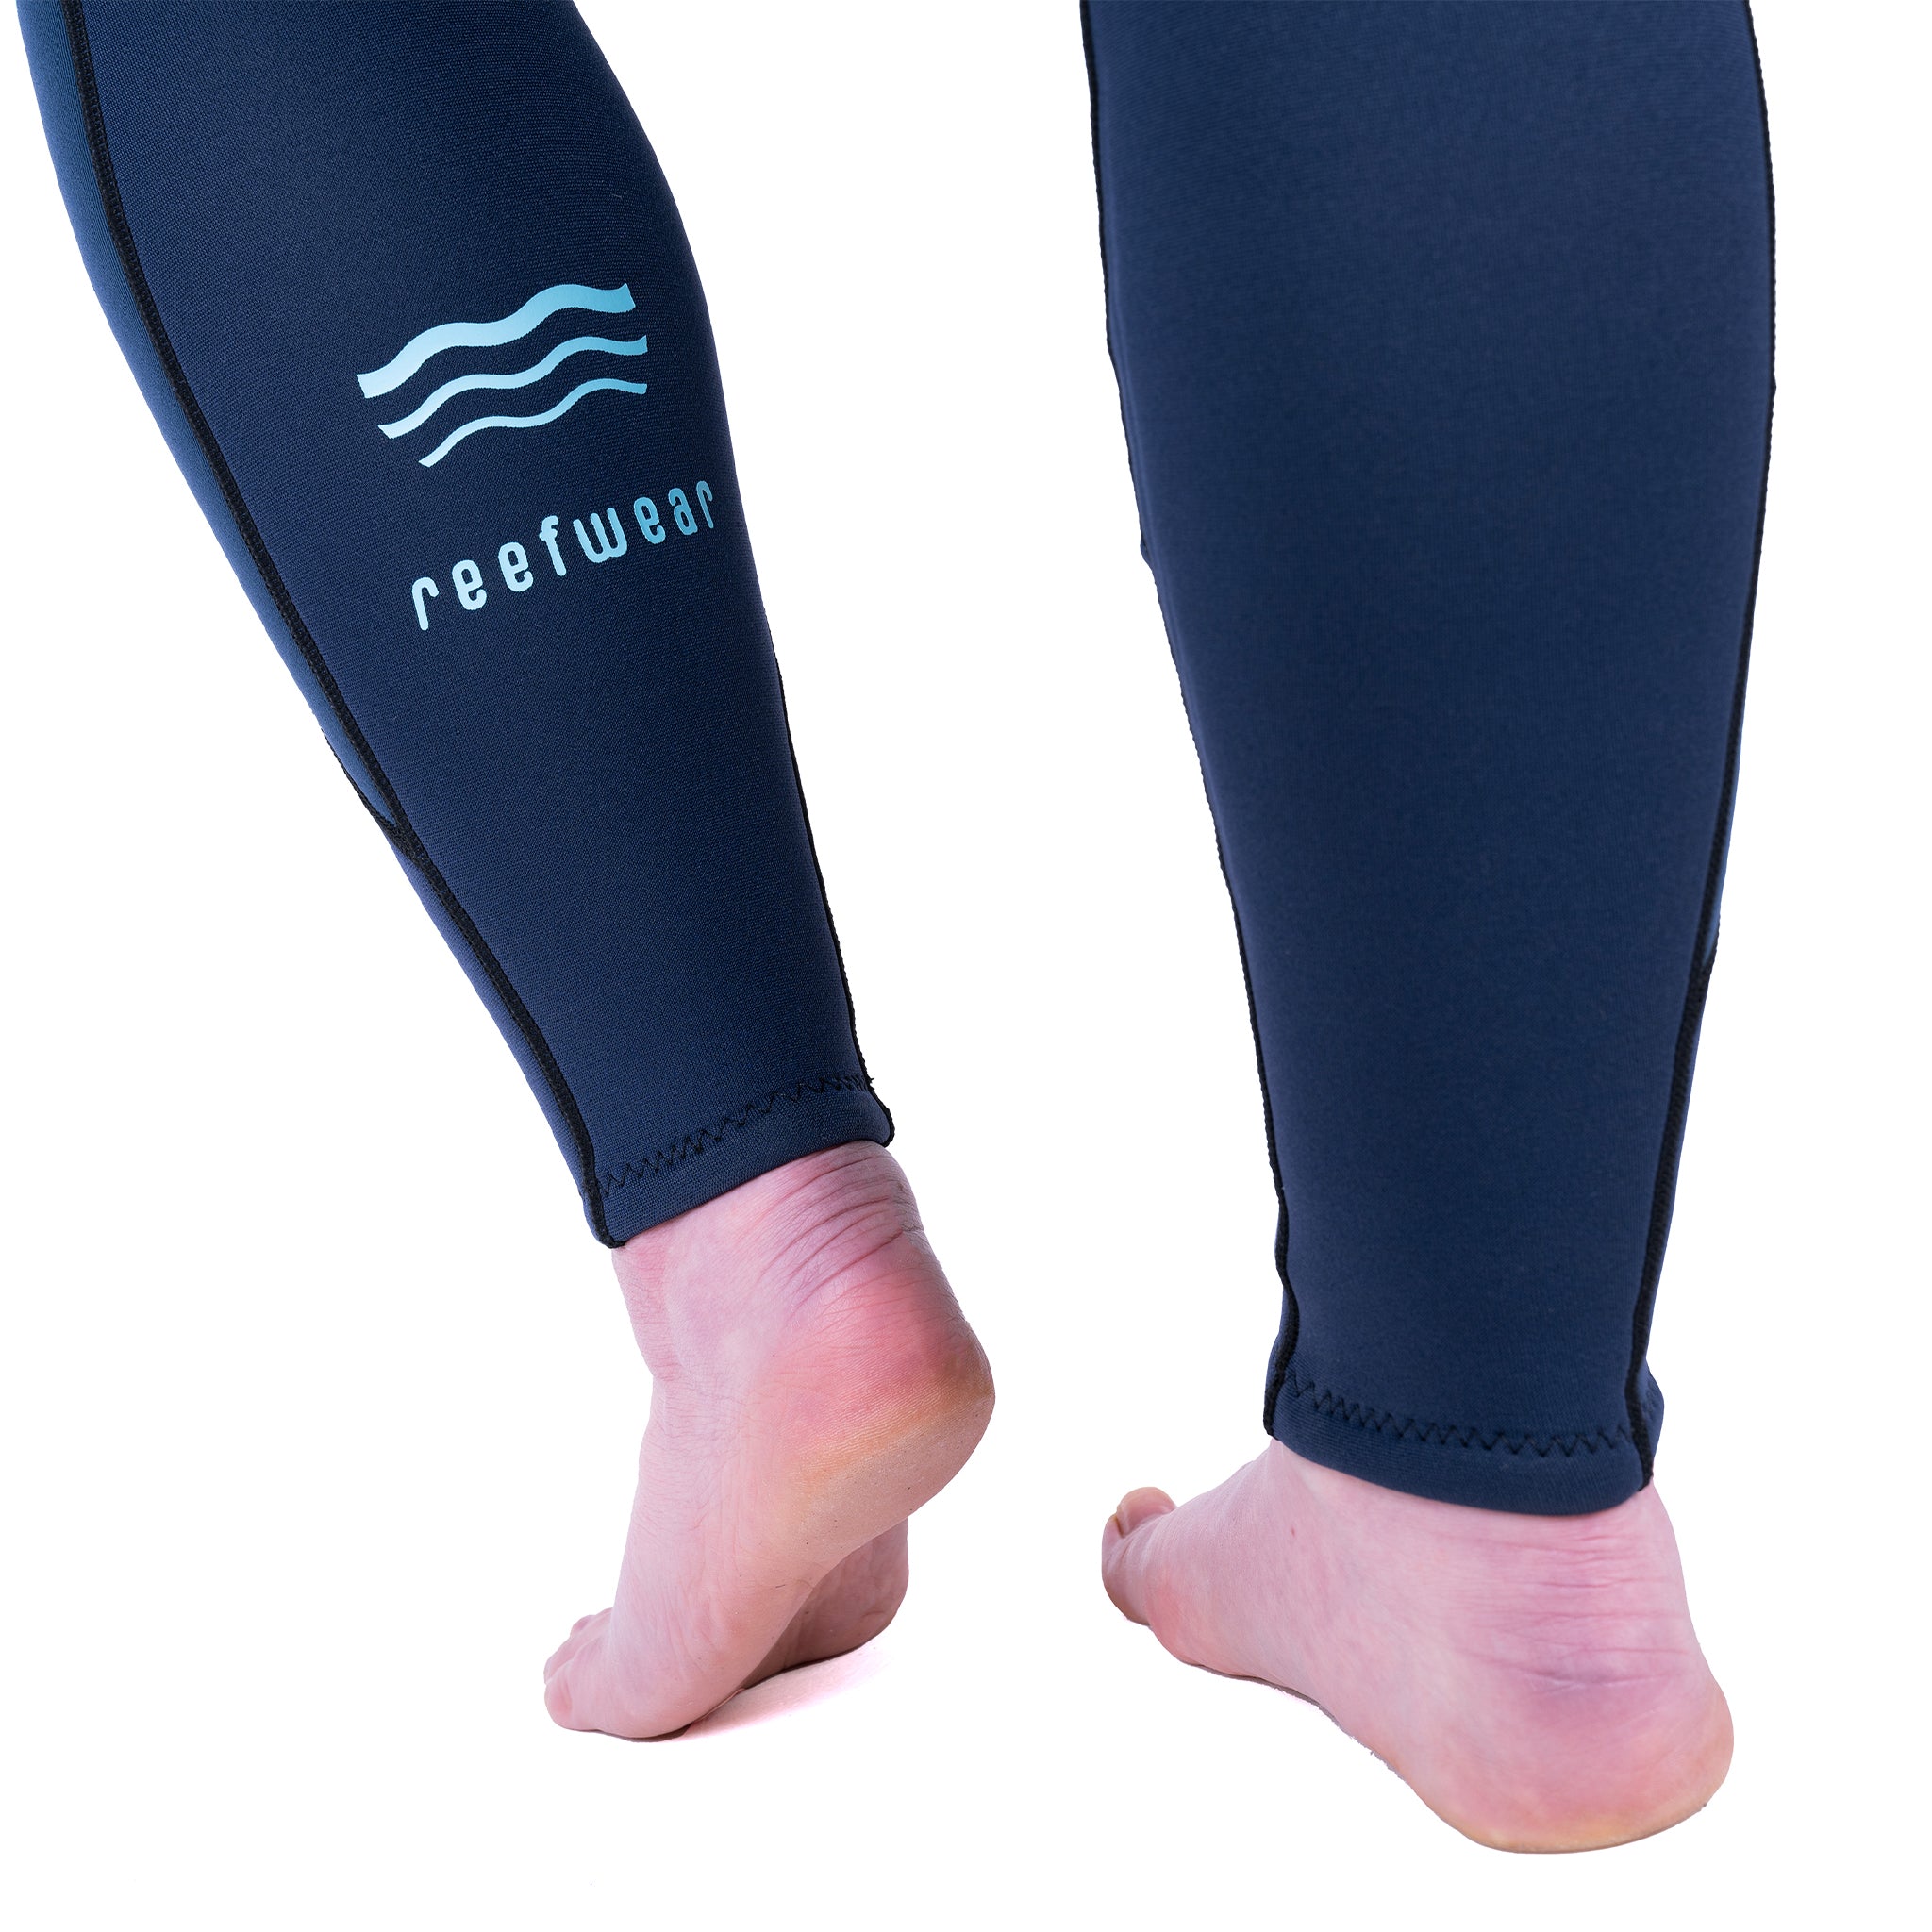 Reefwear Elise 3/2mm Women's Steamer Wetsuit | Rear lower leg logo details